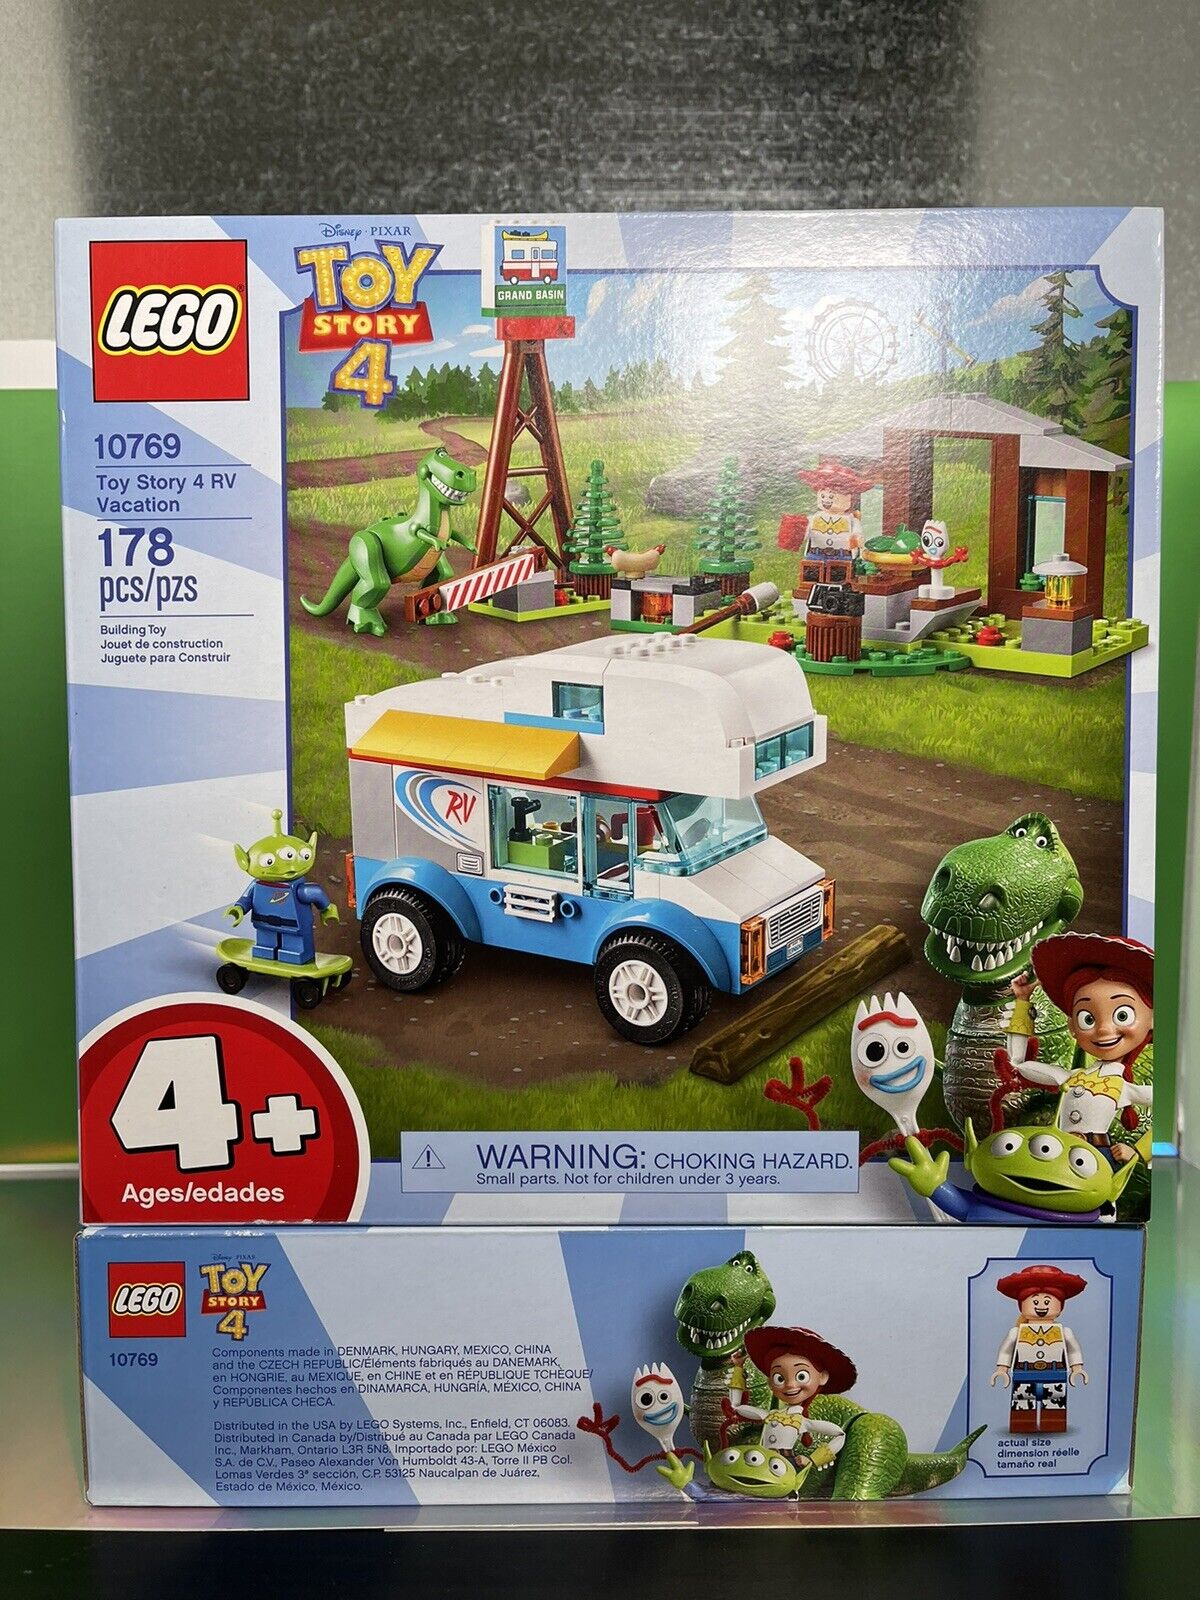 lobby Fremragende Forfølge LEGO Toy Story Toy Story 4 RV Vacation Set (10769) 5702016367744 | eBay